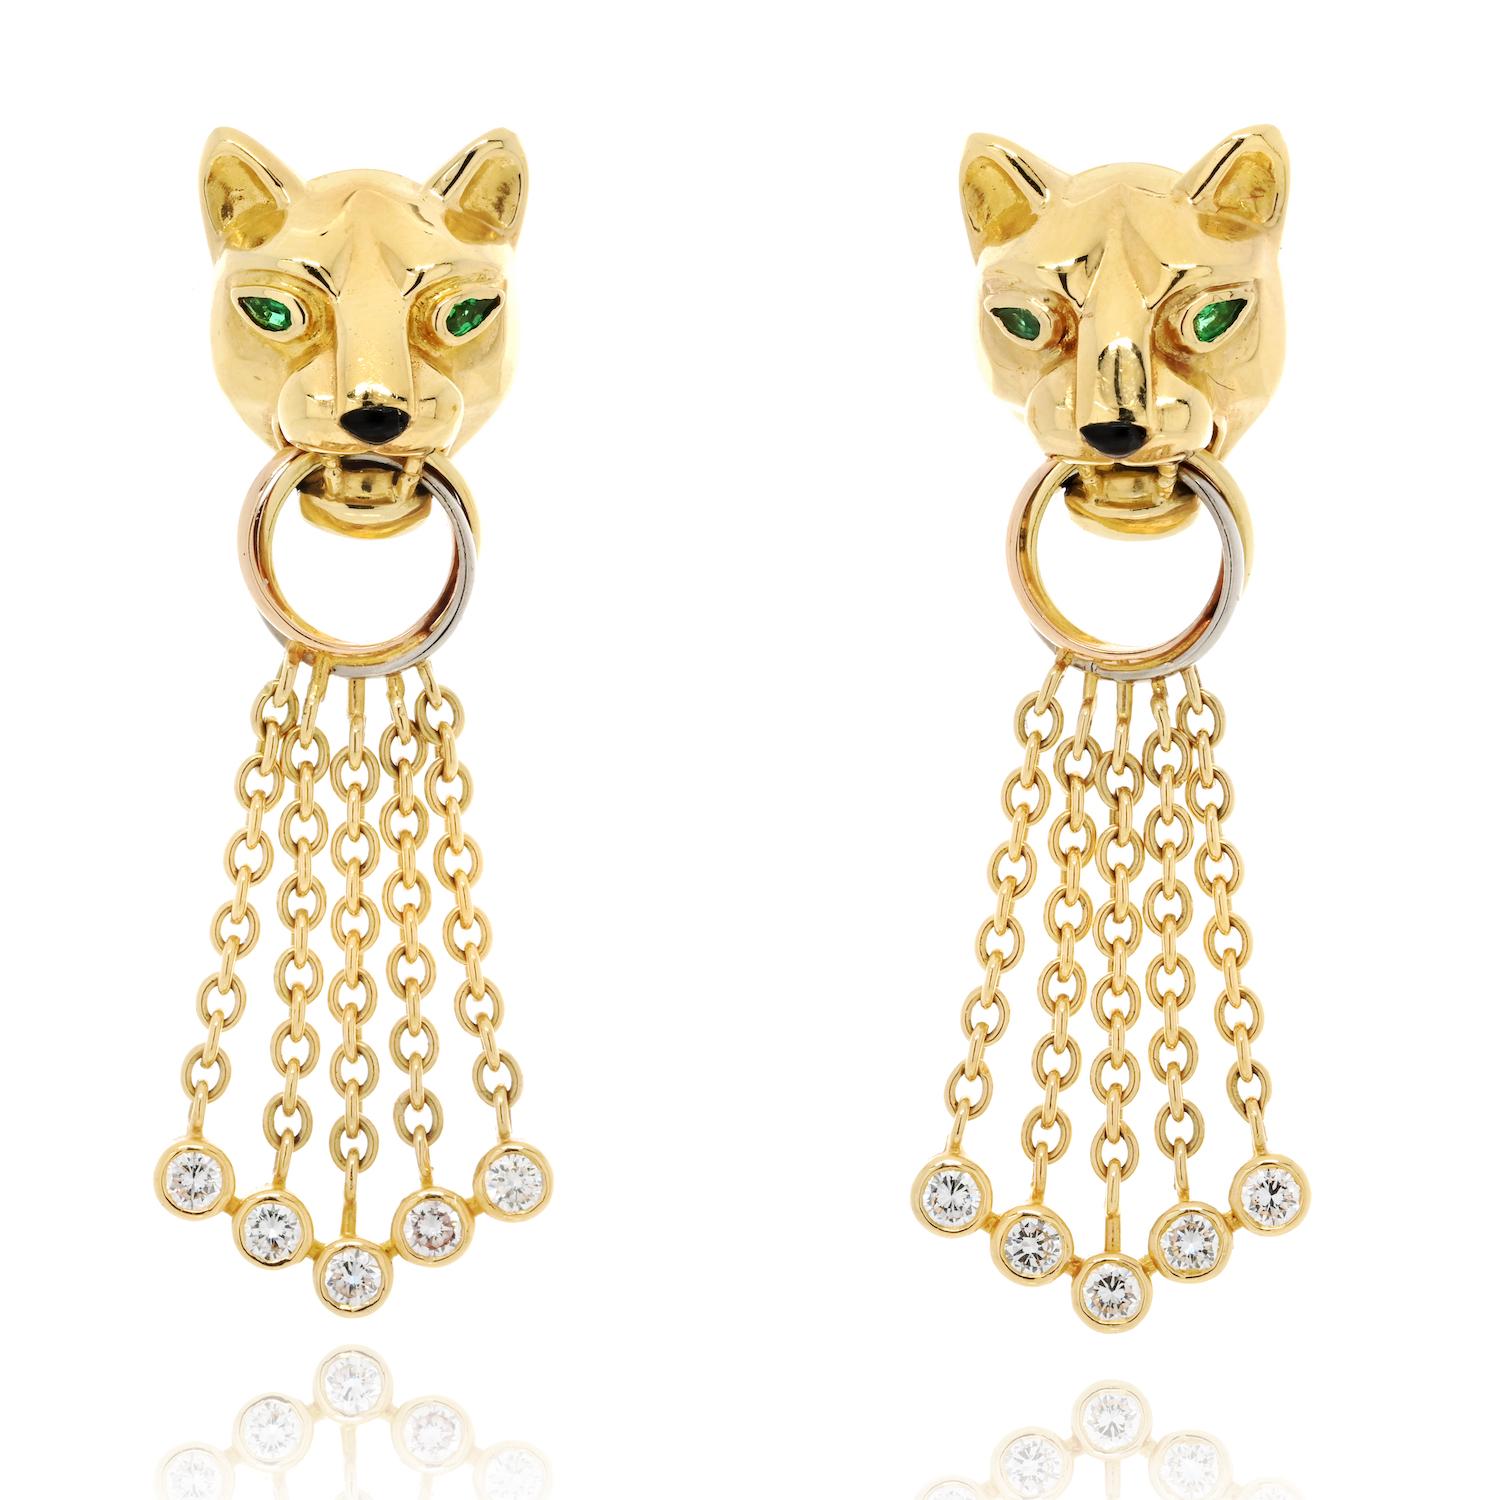 Moderne Boucles d'oreilles 'Panthère' en or jaune 18 carats avec diamants, émeraudes, onyx et perles de Cartier